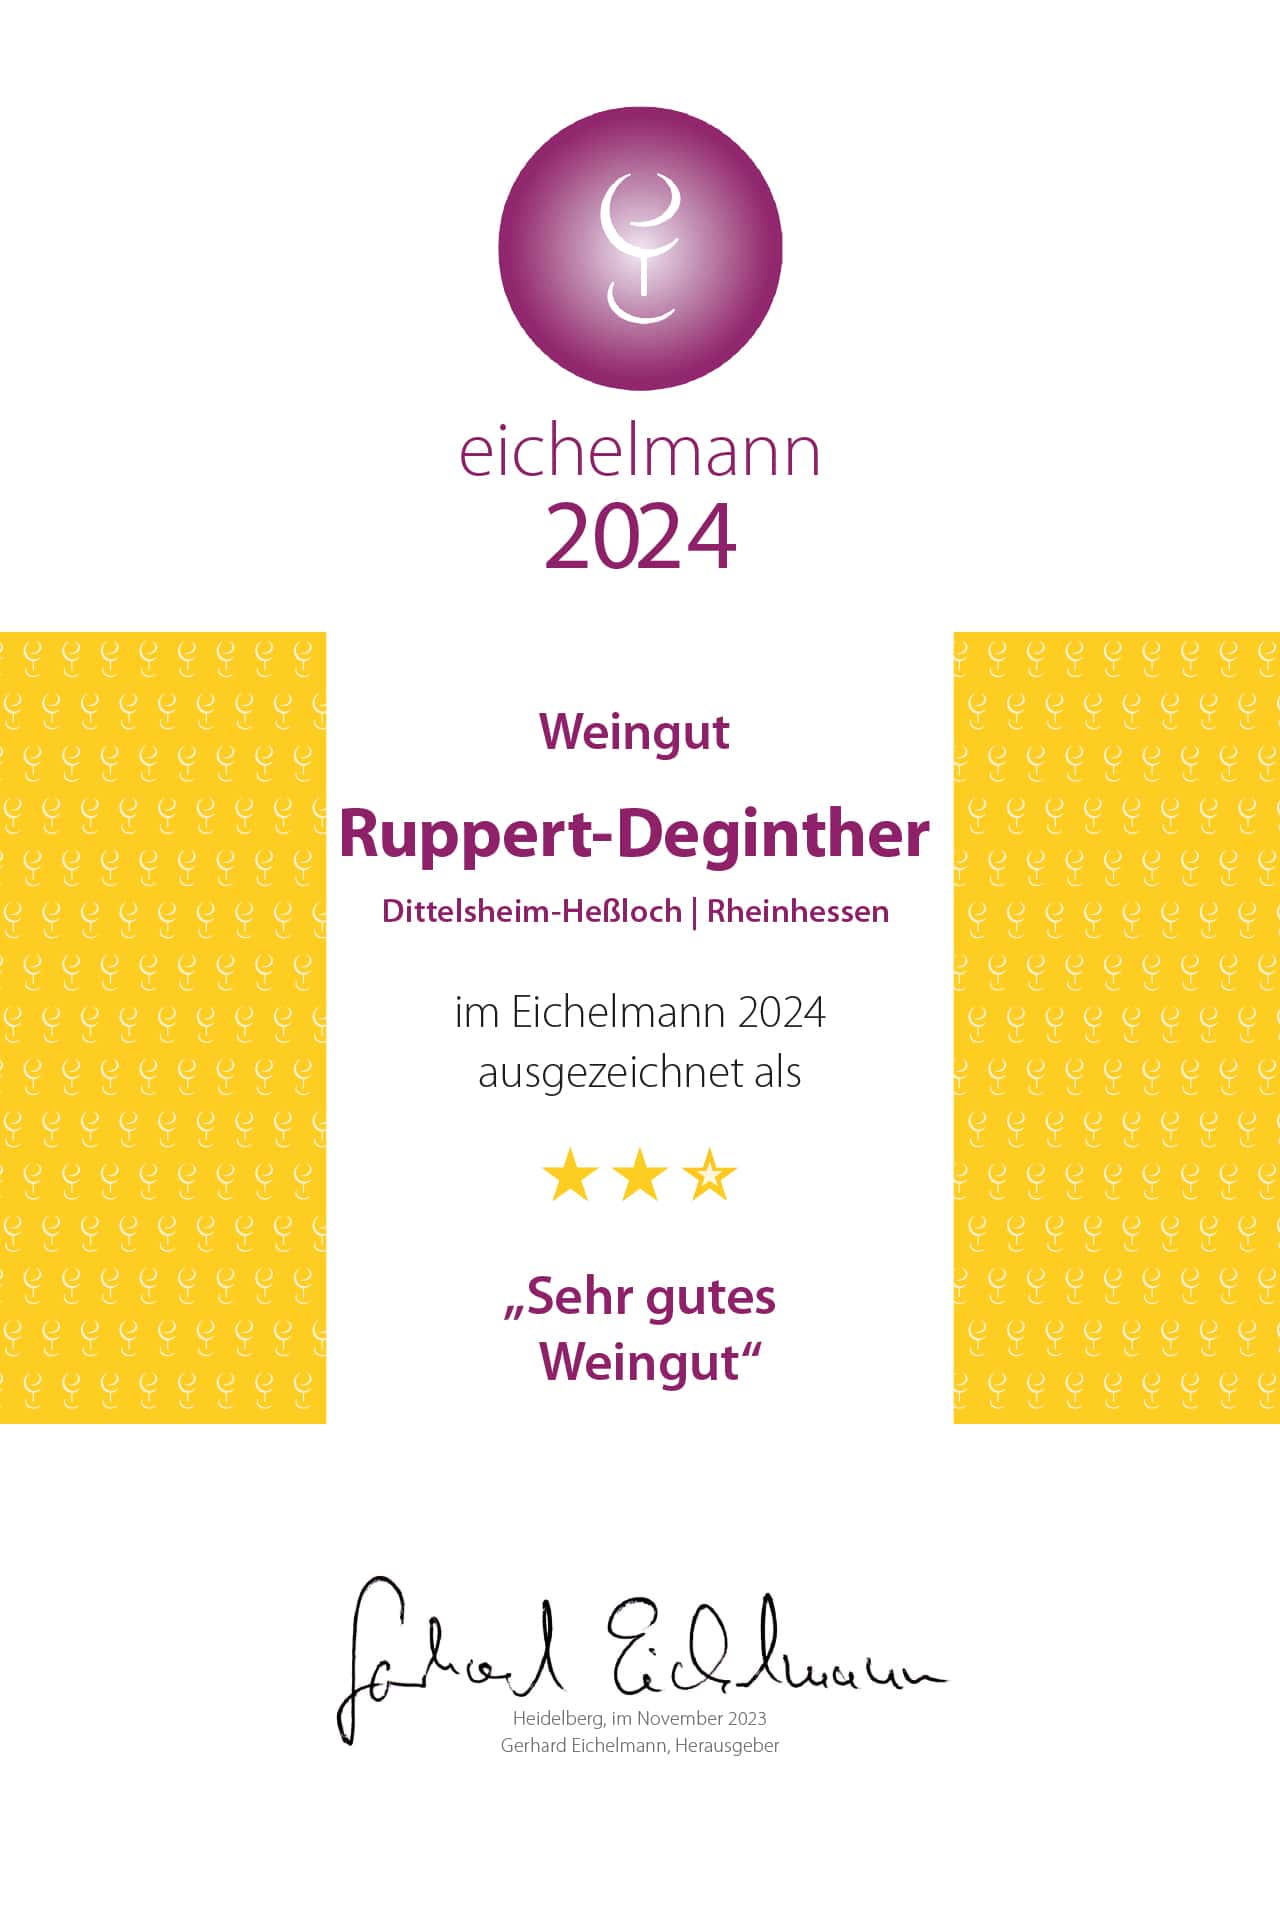 Die Auszeichnung bzw. Urkunde vom eichelmann 2024 als "Sehr gutes Weingut"